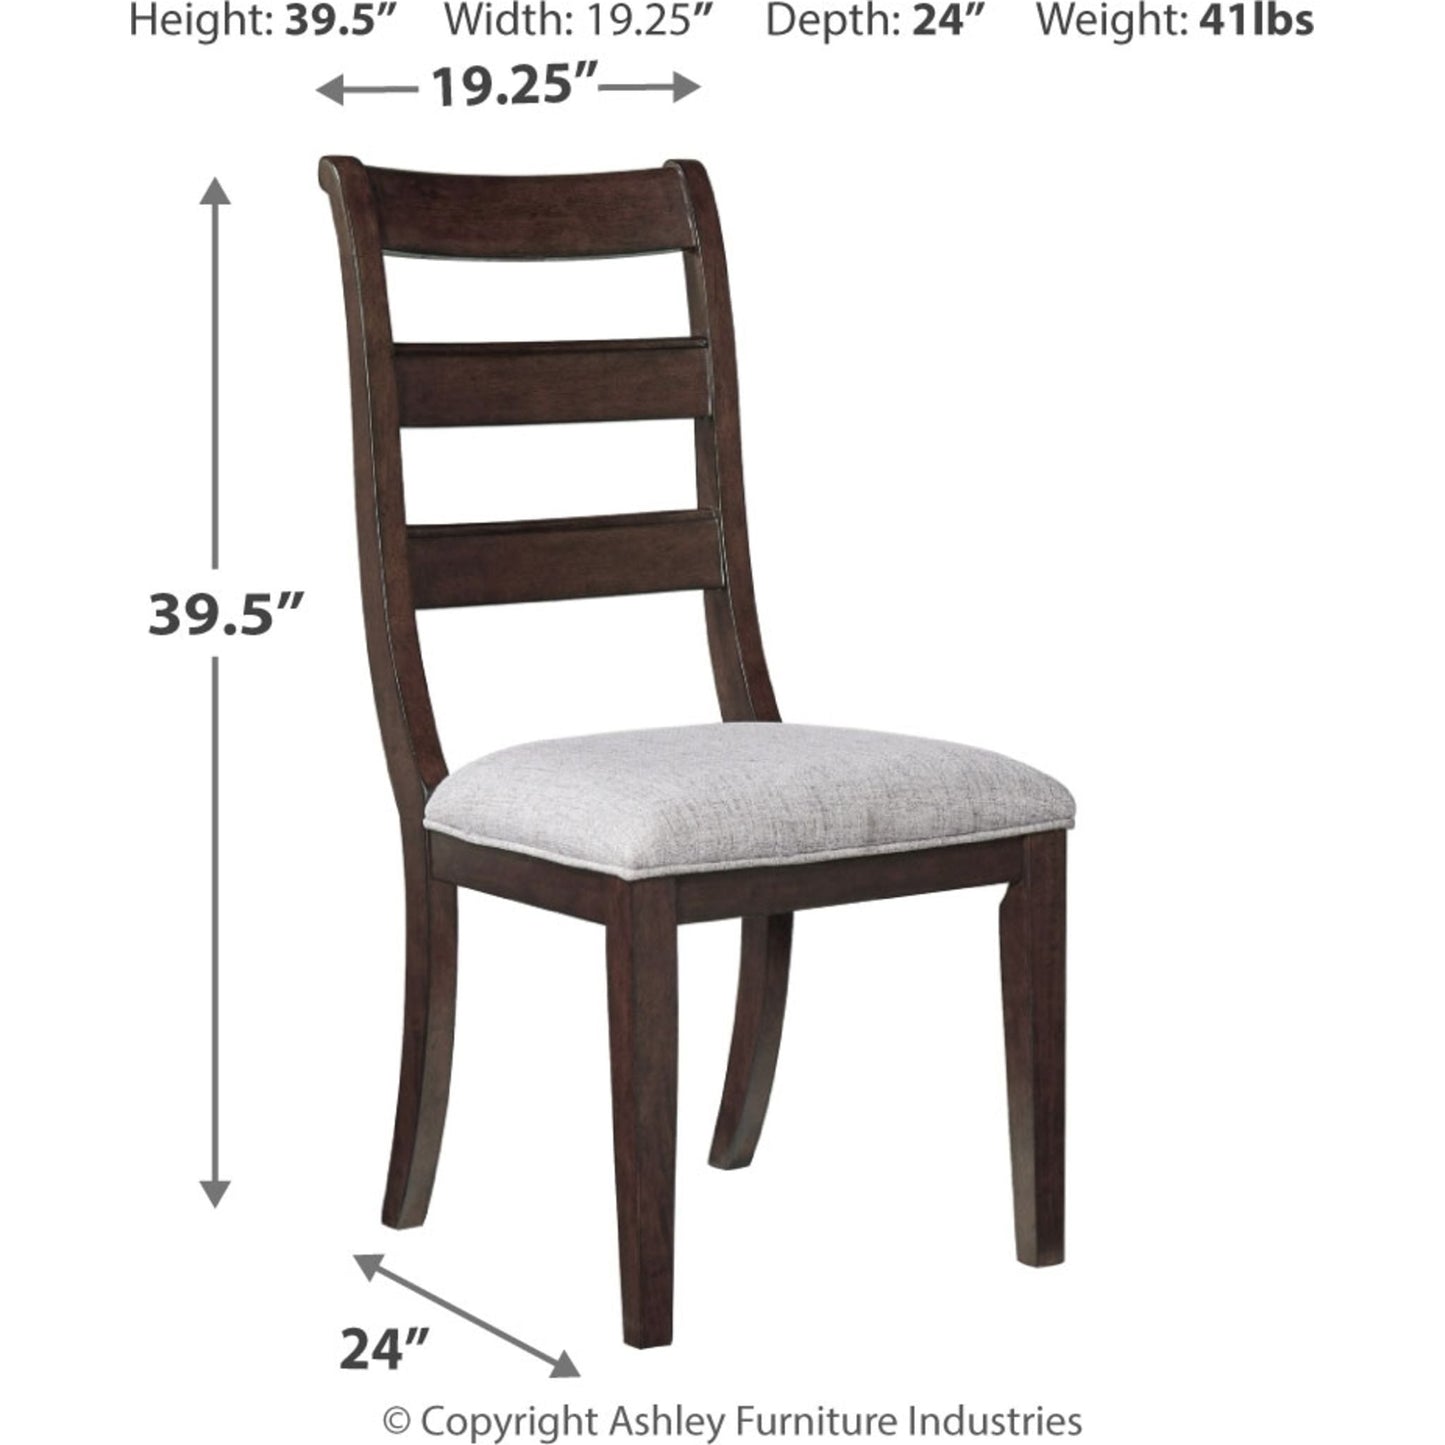 Hilmoore Side Chair - Reddish Brown - (D677-01)